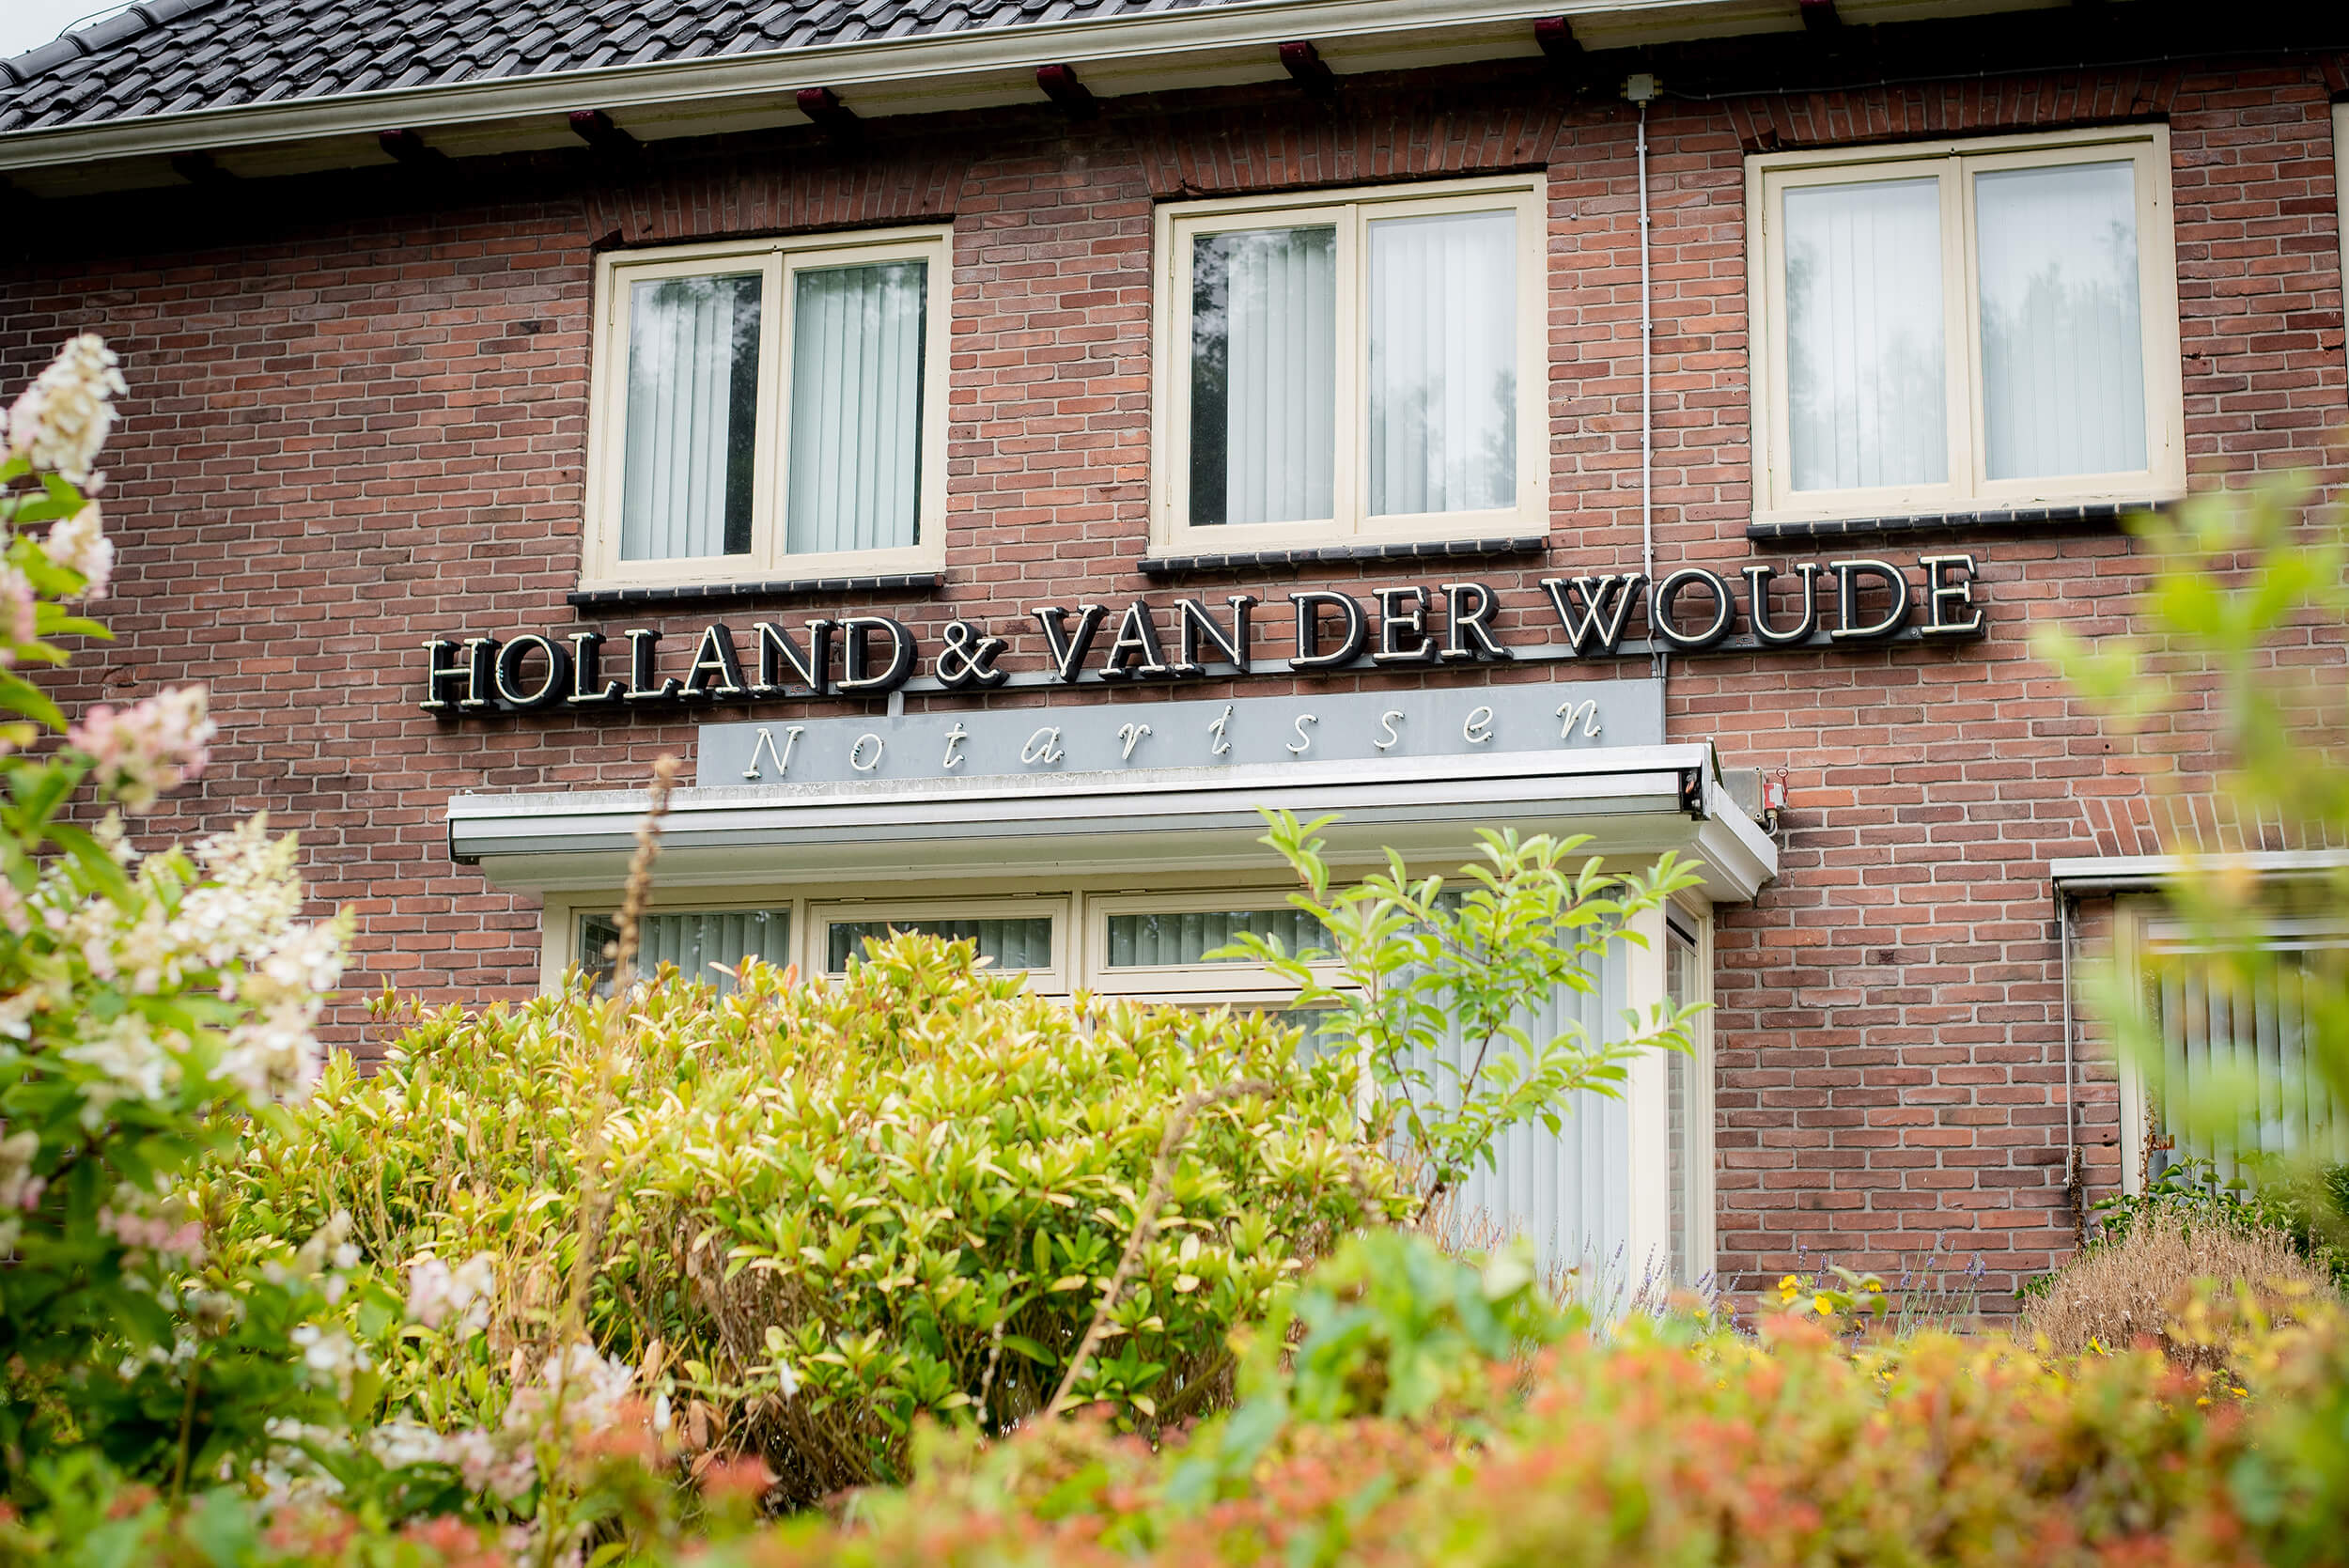 Roden – Holland & van der Woude (1 van 1)